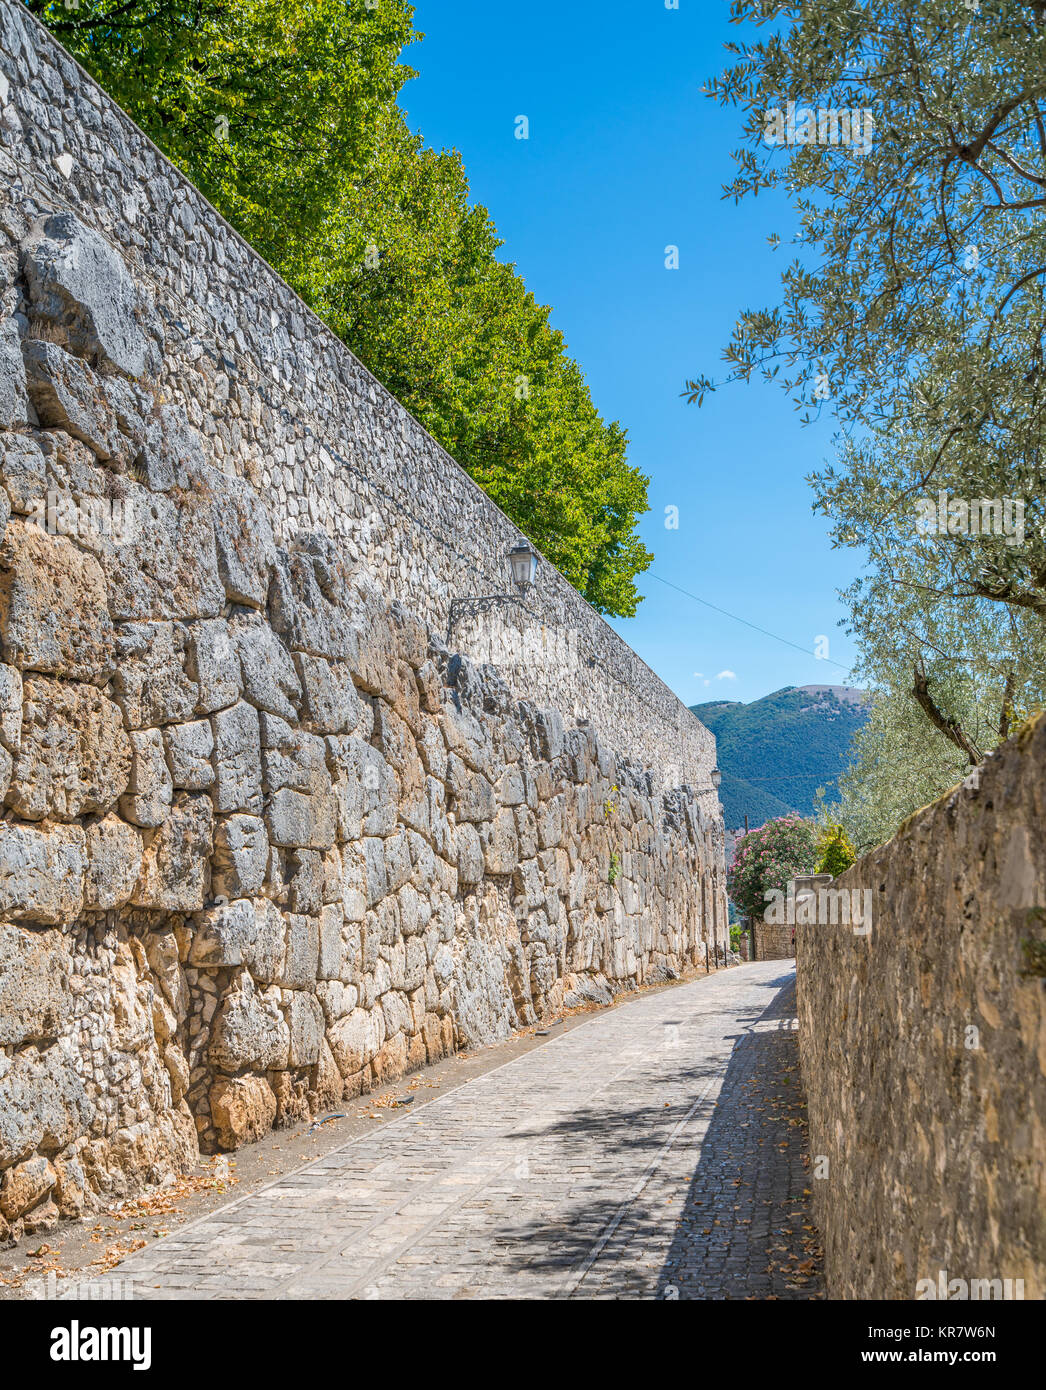 Mura Megalitiche in Alatri acropoli, provincia di Frosinone, Lazio, Italia centrale. Foto Stock